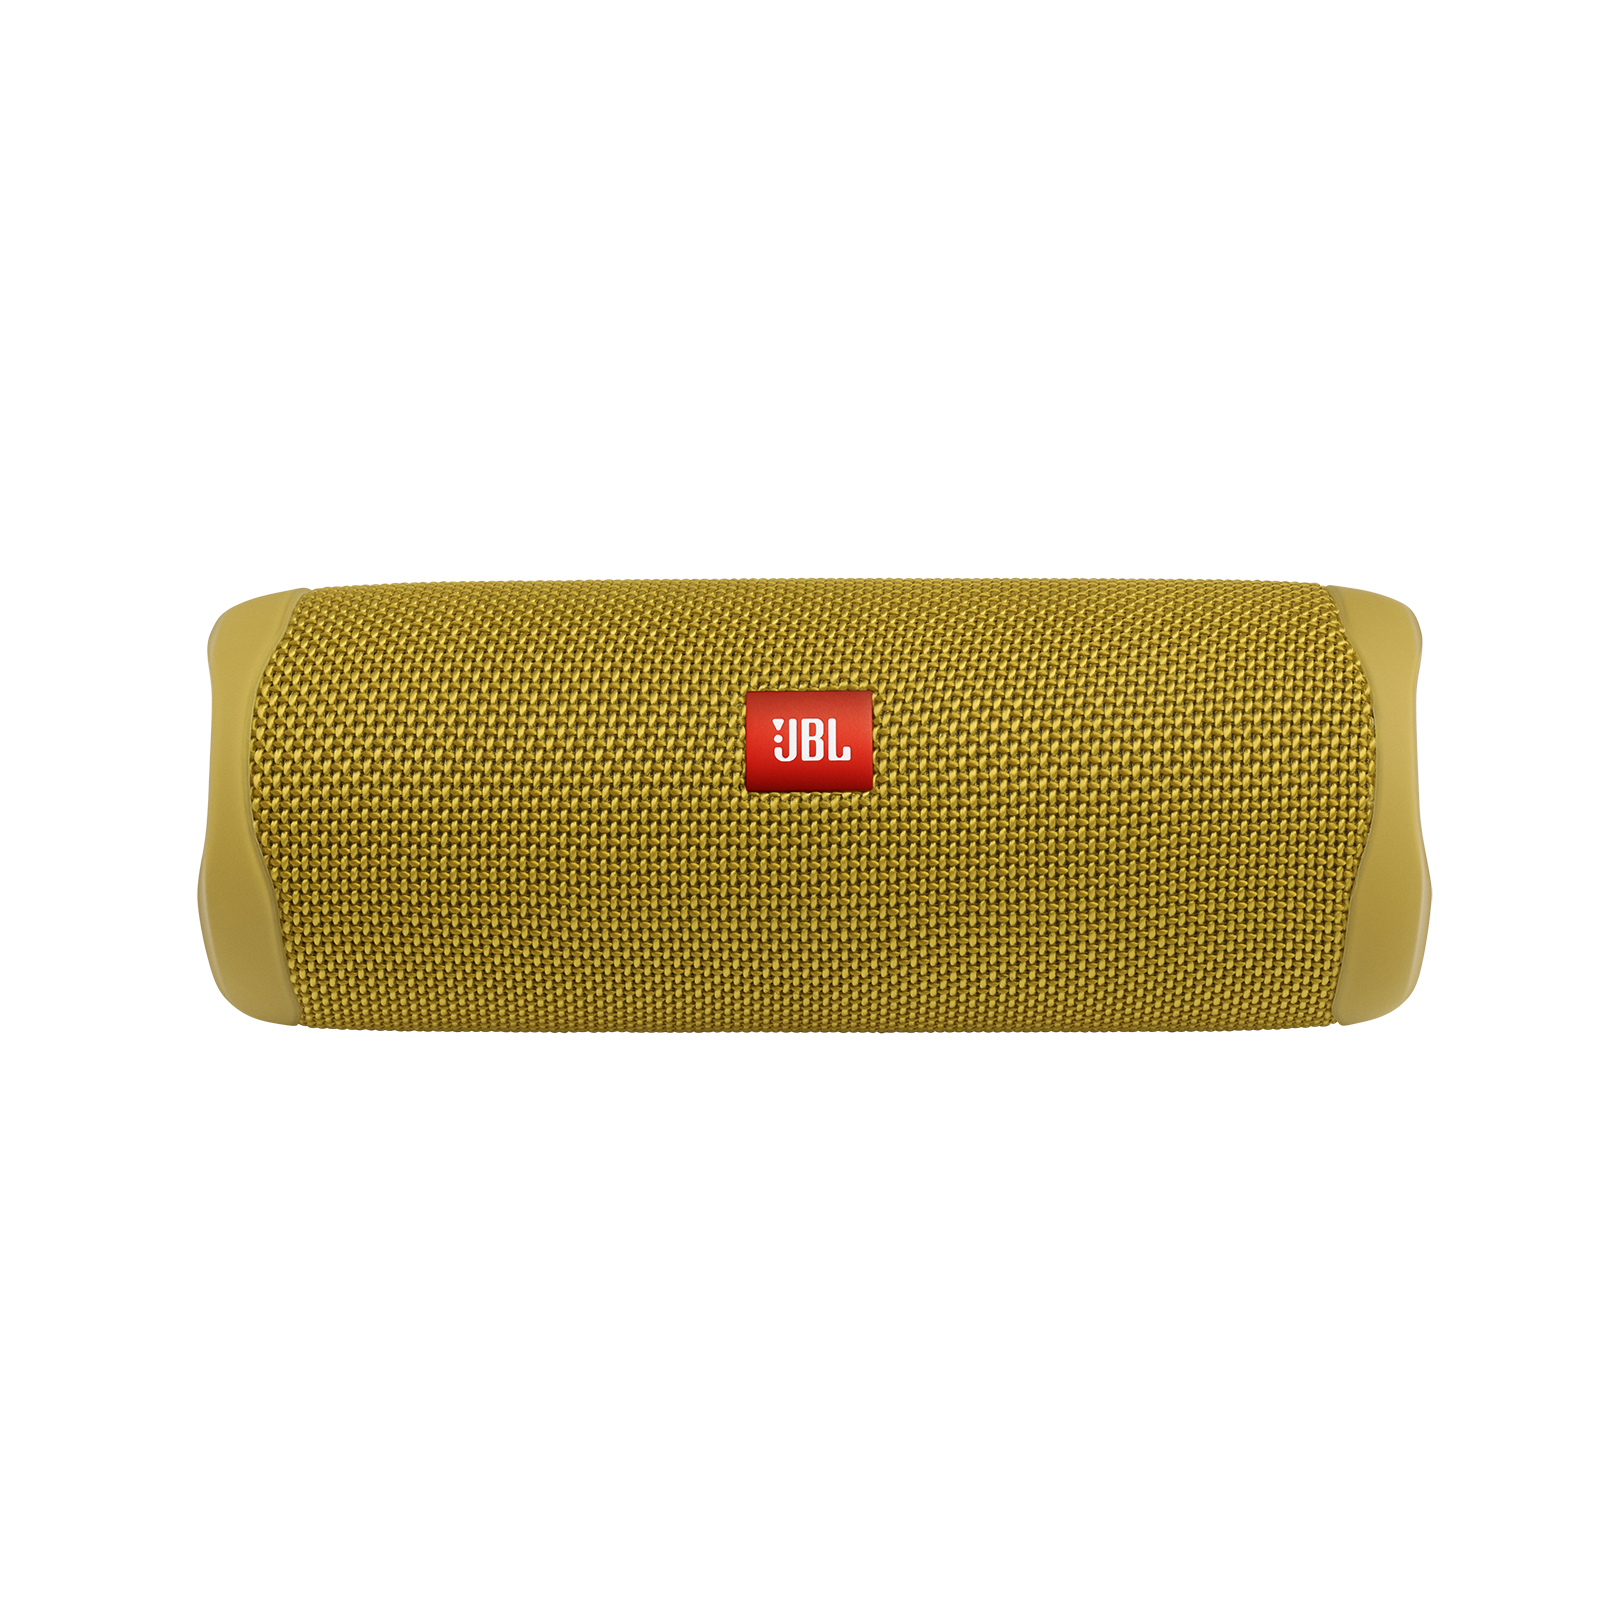 JBL Flip 5 - Mustard Yellow - Portable Waterproof Speaker - Front